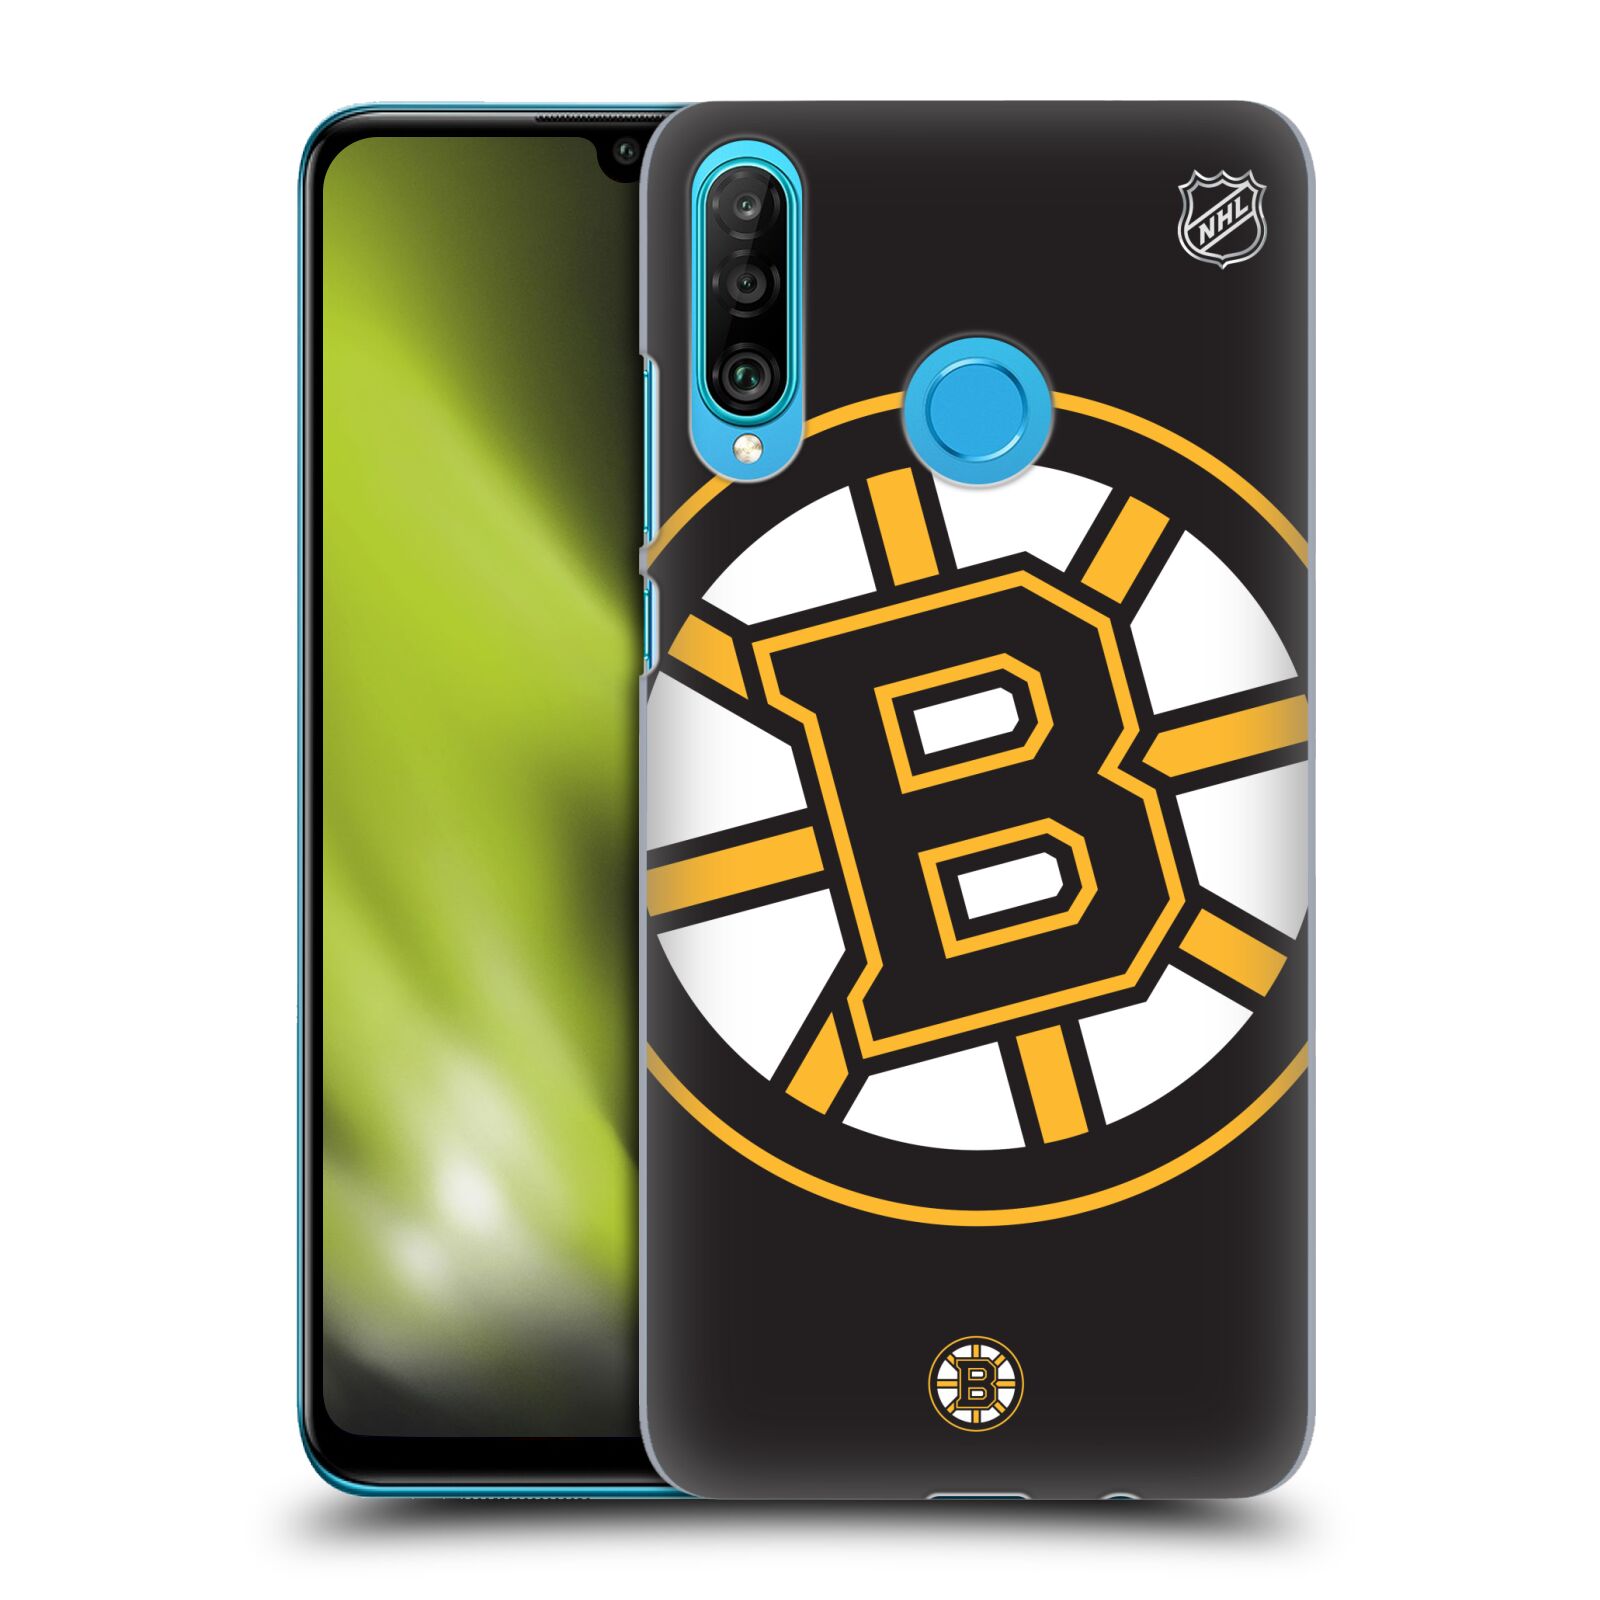 Pouzdro na mobil Huawei P30 LITE - HEAD CASE - Hokej NHL - Boston Bruins - velký znak